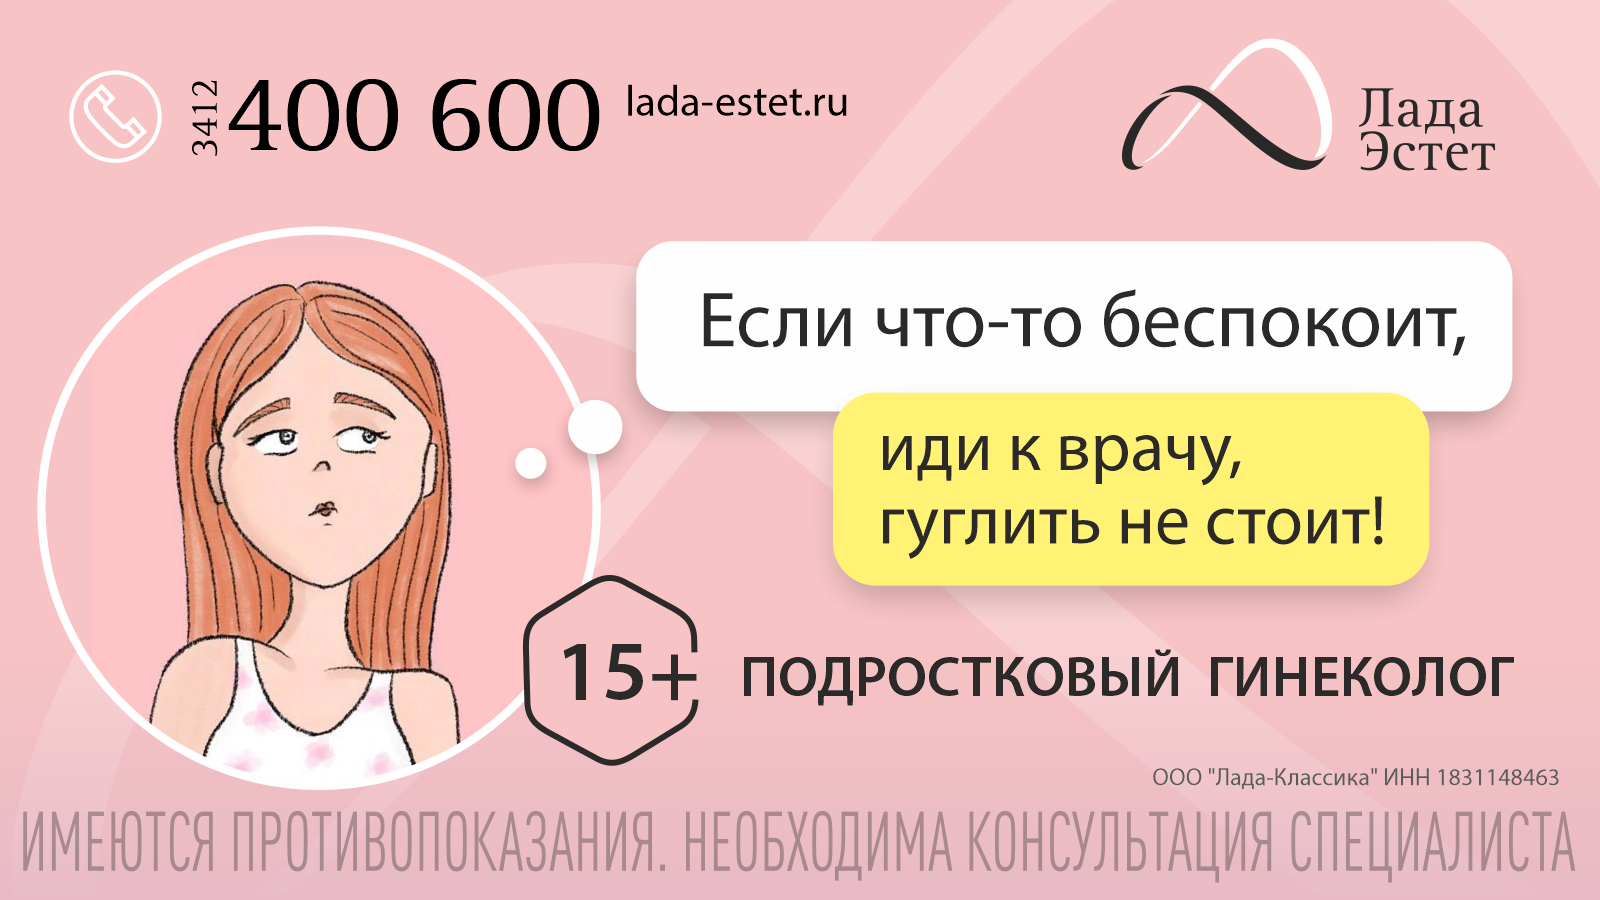 Подростковая гинекология в Ижевске "Лада-Эстет" открытие в декабре 2023 